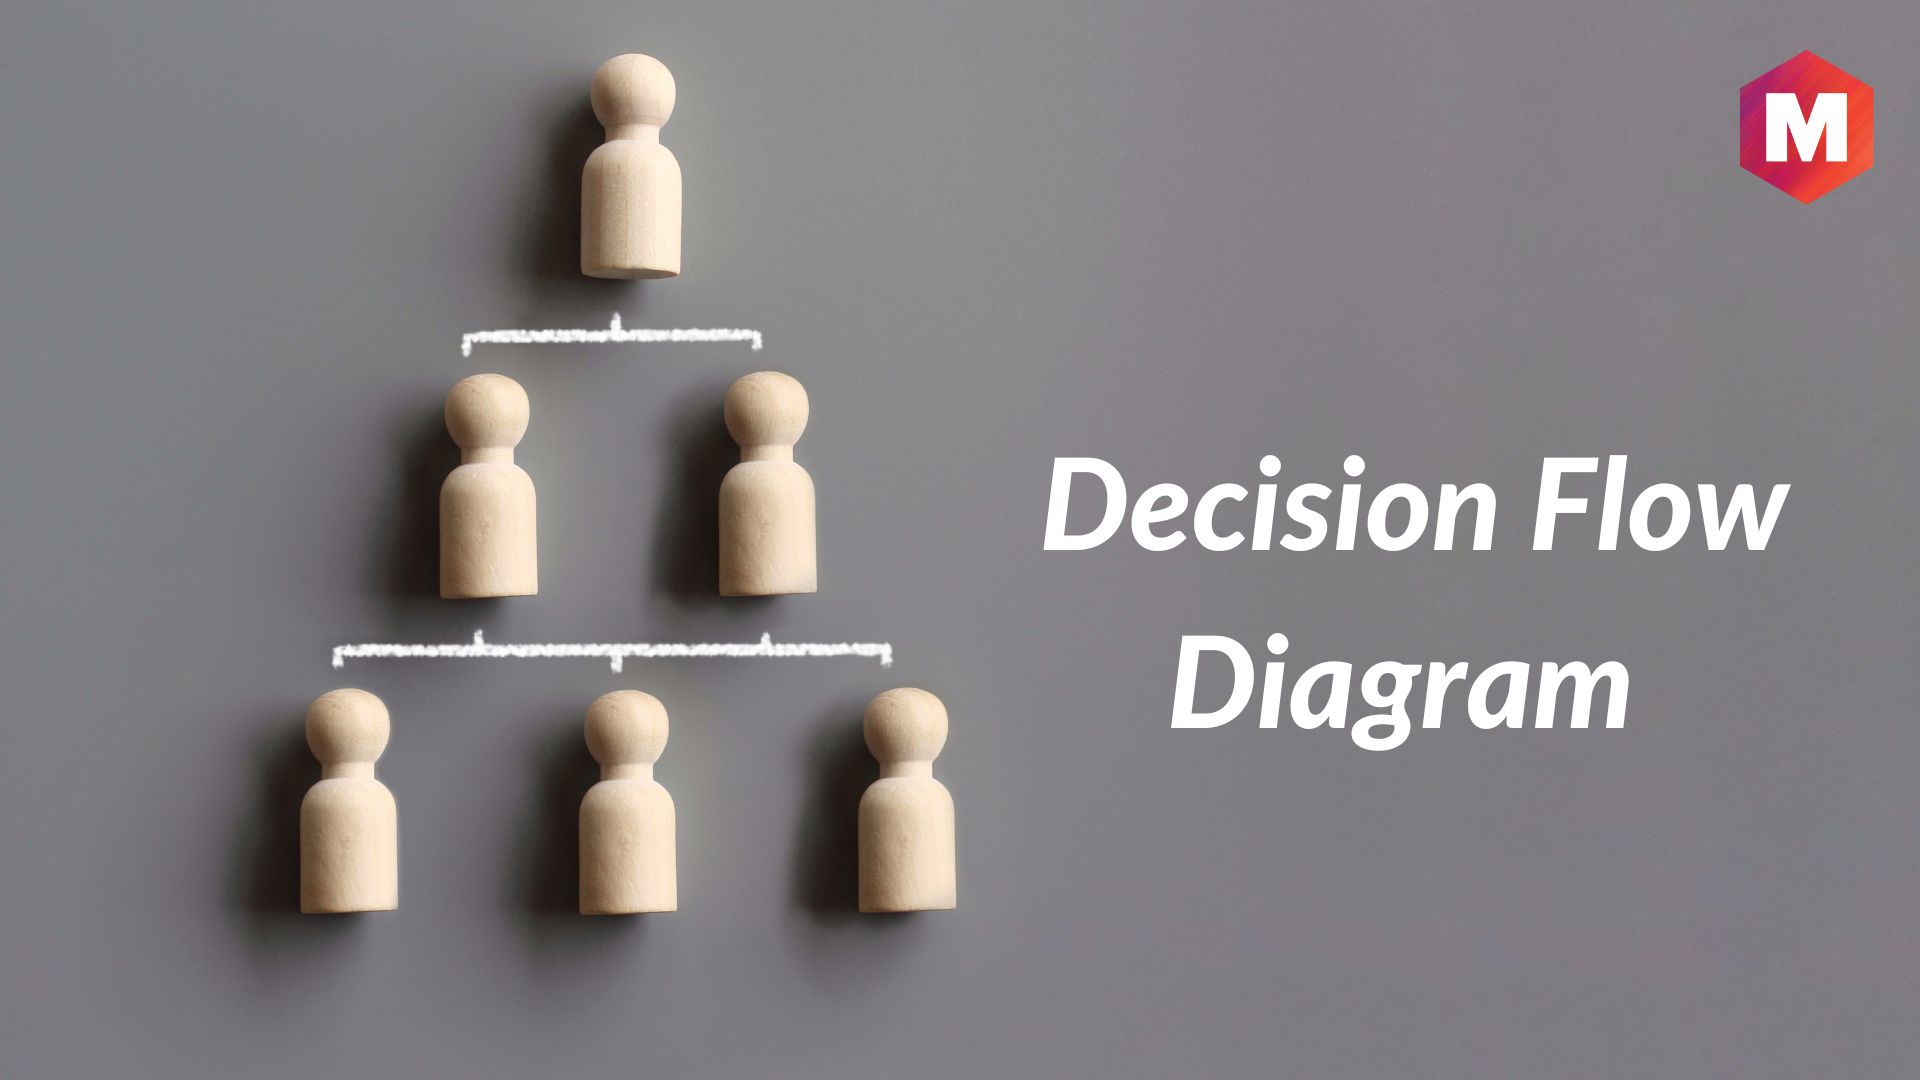 Decision Flow Diagram - Definition, Types, Advantages, Disadvantages